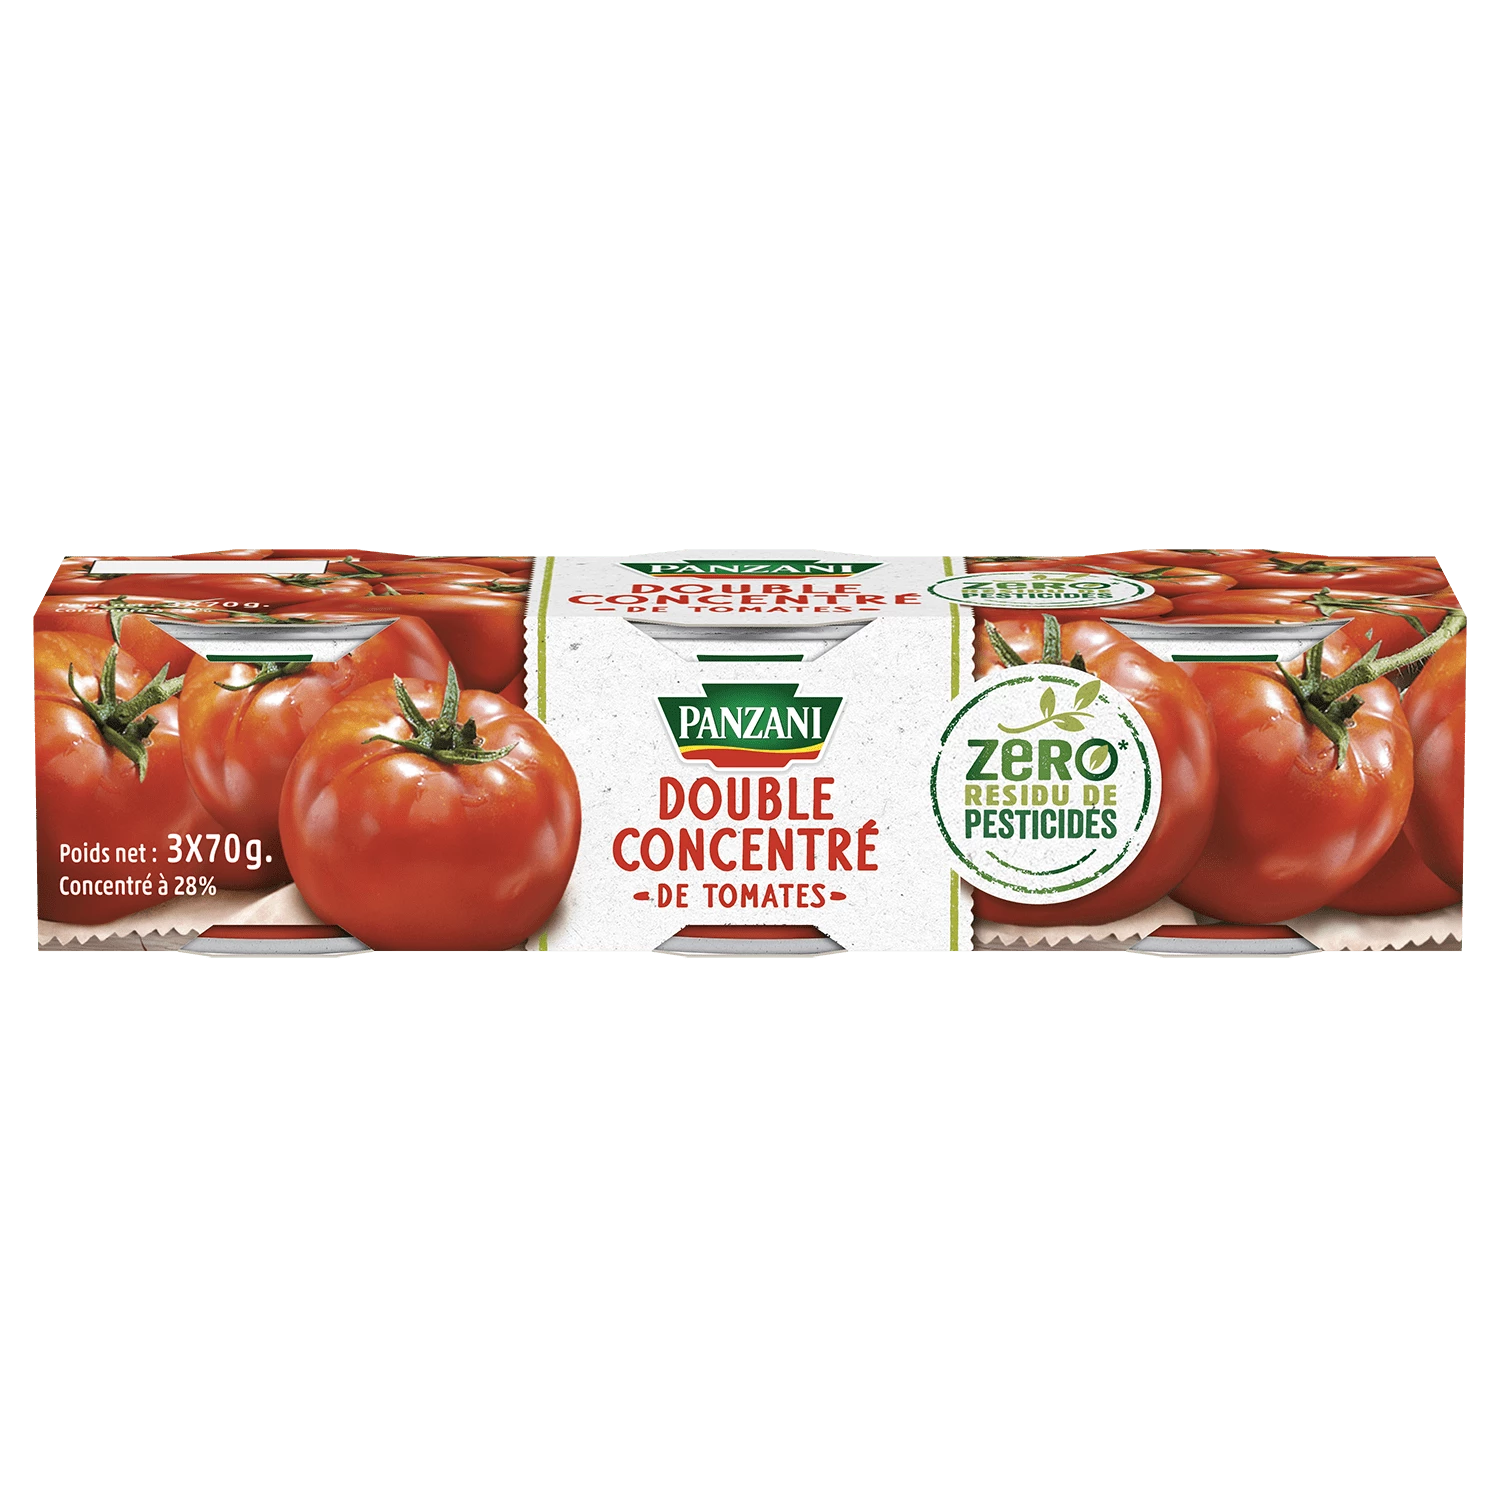 双倍番茄浓缩液； 3X70克 - PANZANI